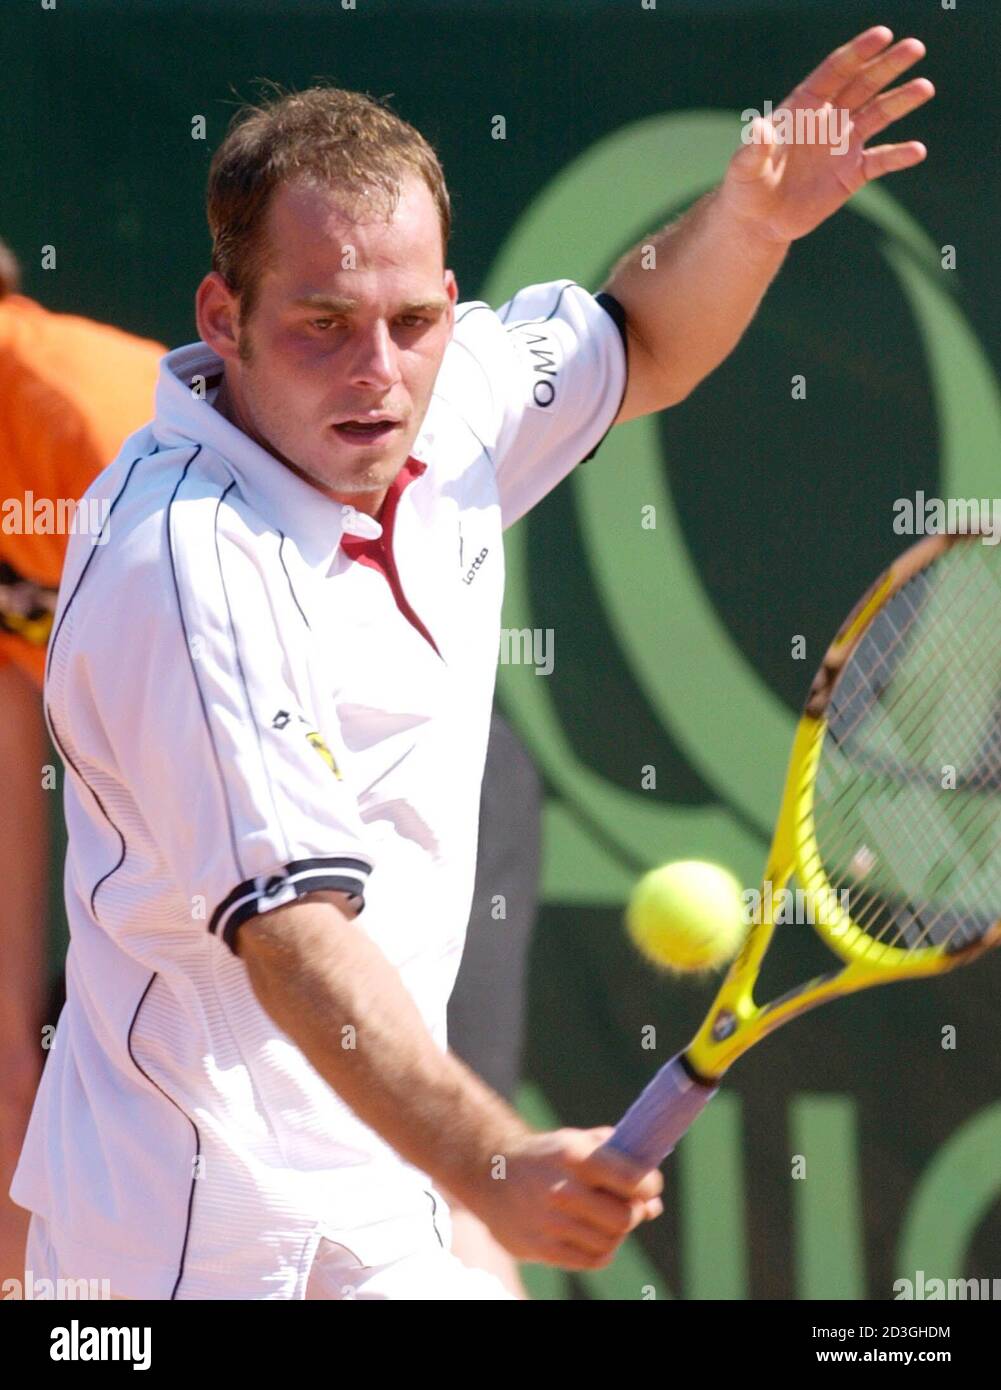 Oesterreichs Markus Hipfl (Bild) gewann heute, am 24. Mai 2001, beim St.  Poeltener ATP-Tennisturnier das Viertelfinalspiel gegen den Belgier Xavier  Malisse 6-3 6-3. HP Stock Photo - Alamy